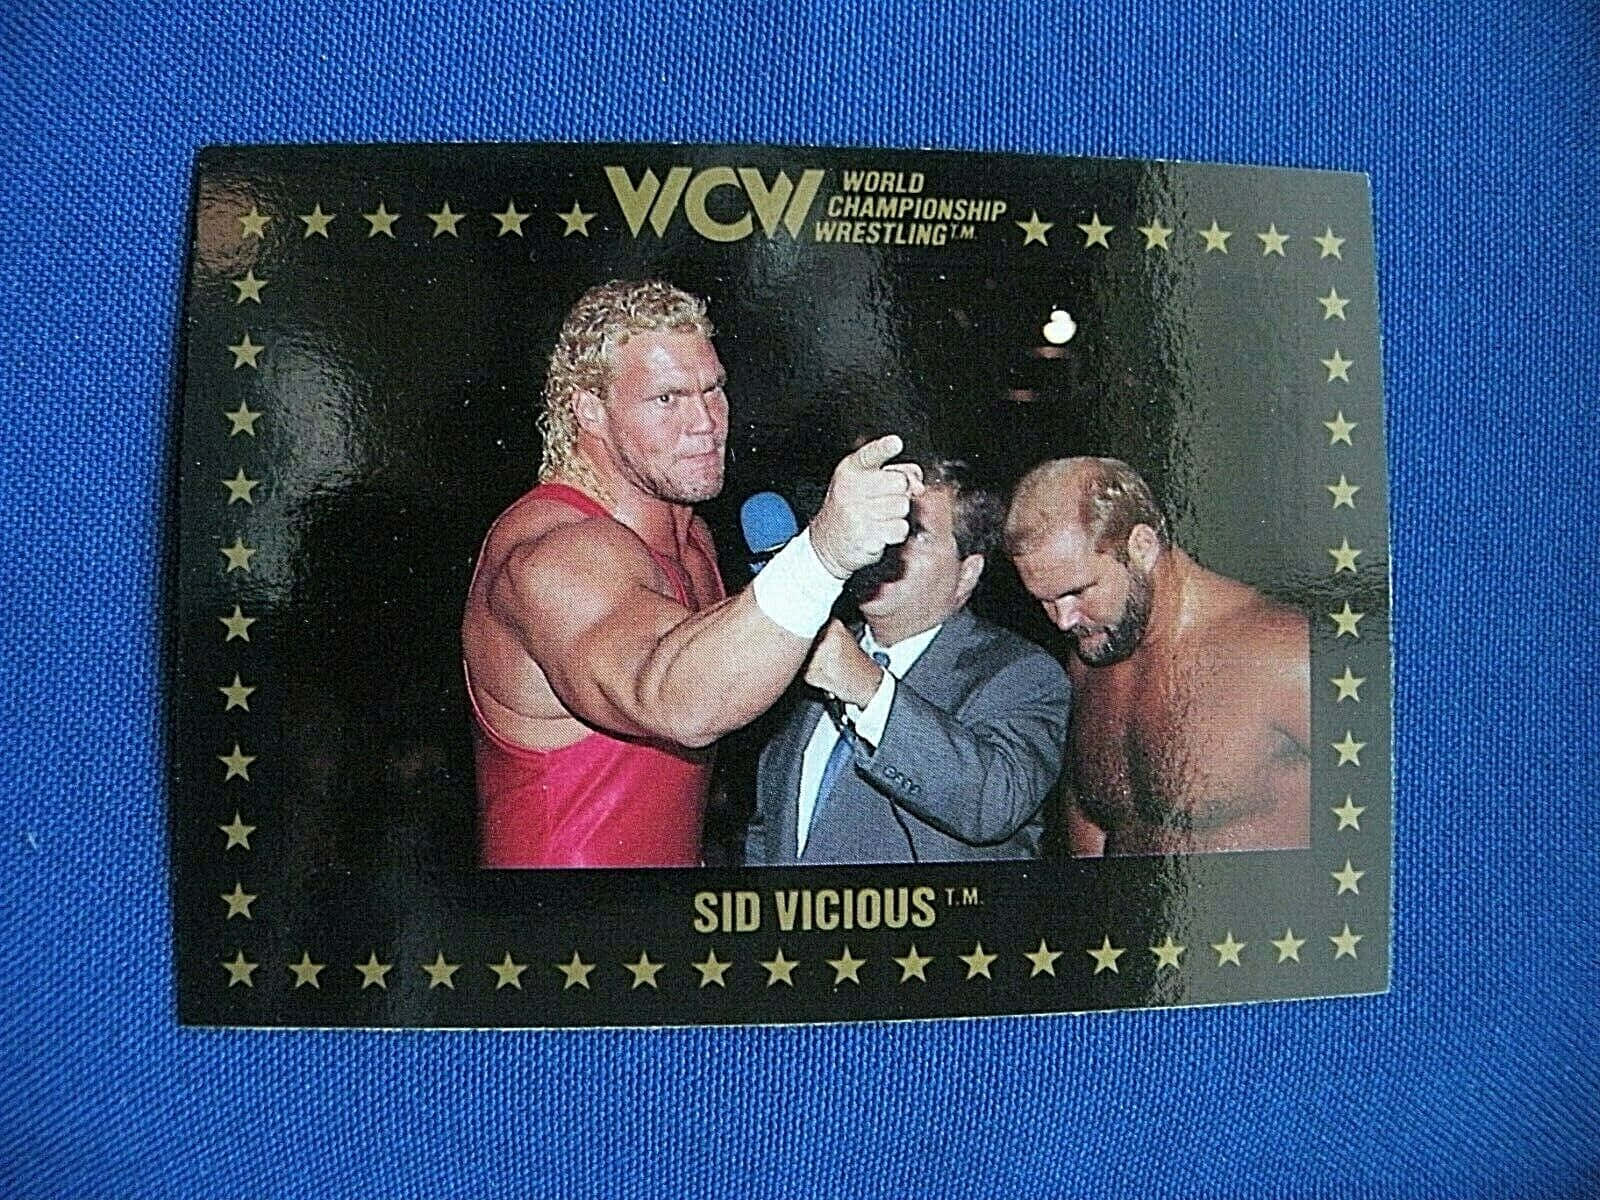 Et billede af WCW Wrestler Sid Vicious, der peger mod kameraet. Wallpaper